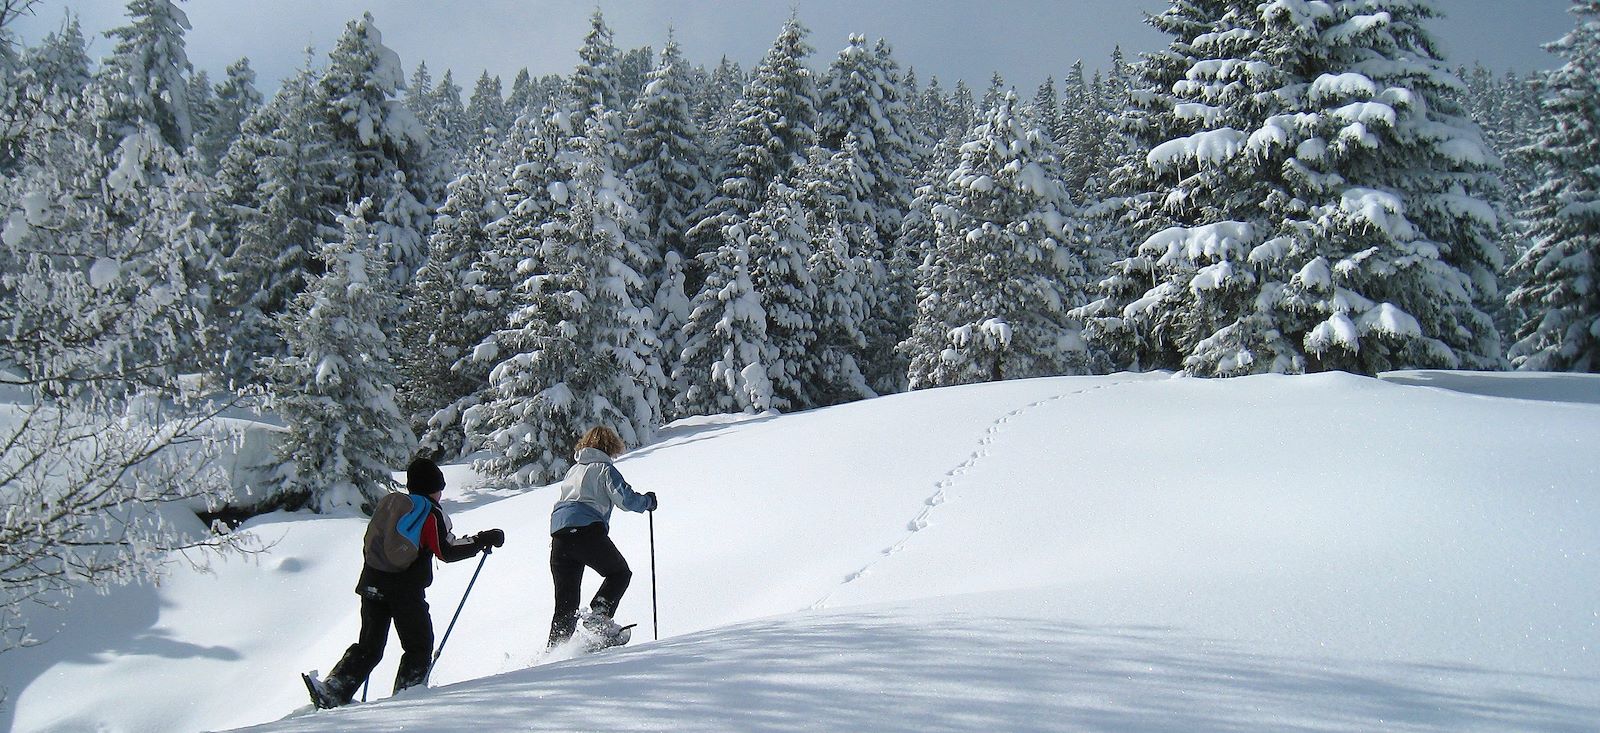 Voyage à la neige : Week-end trappeur dans le Jura